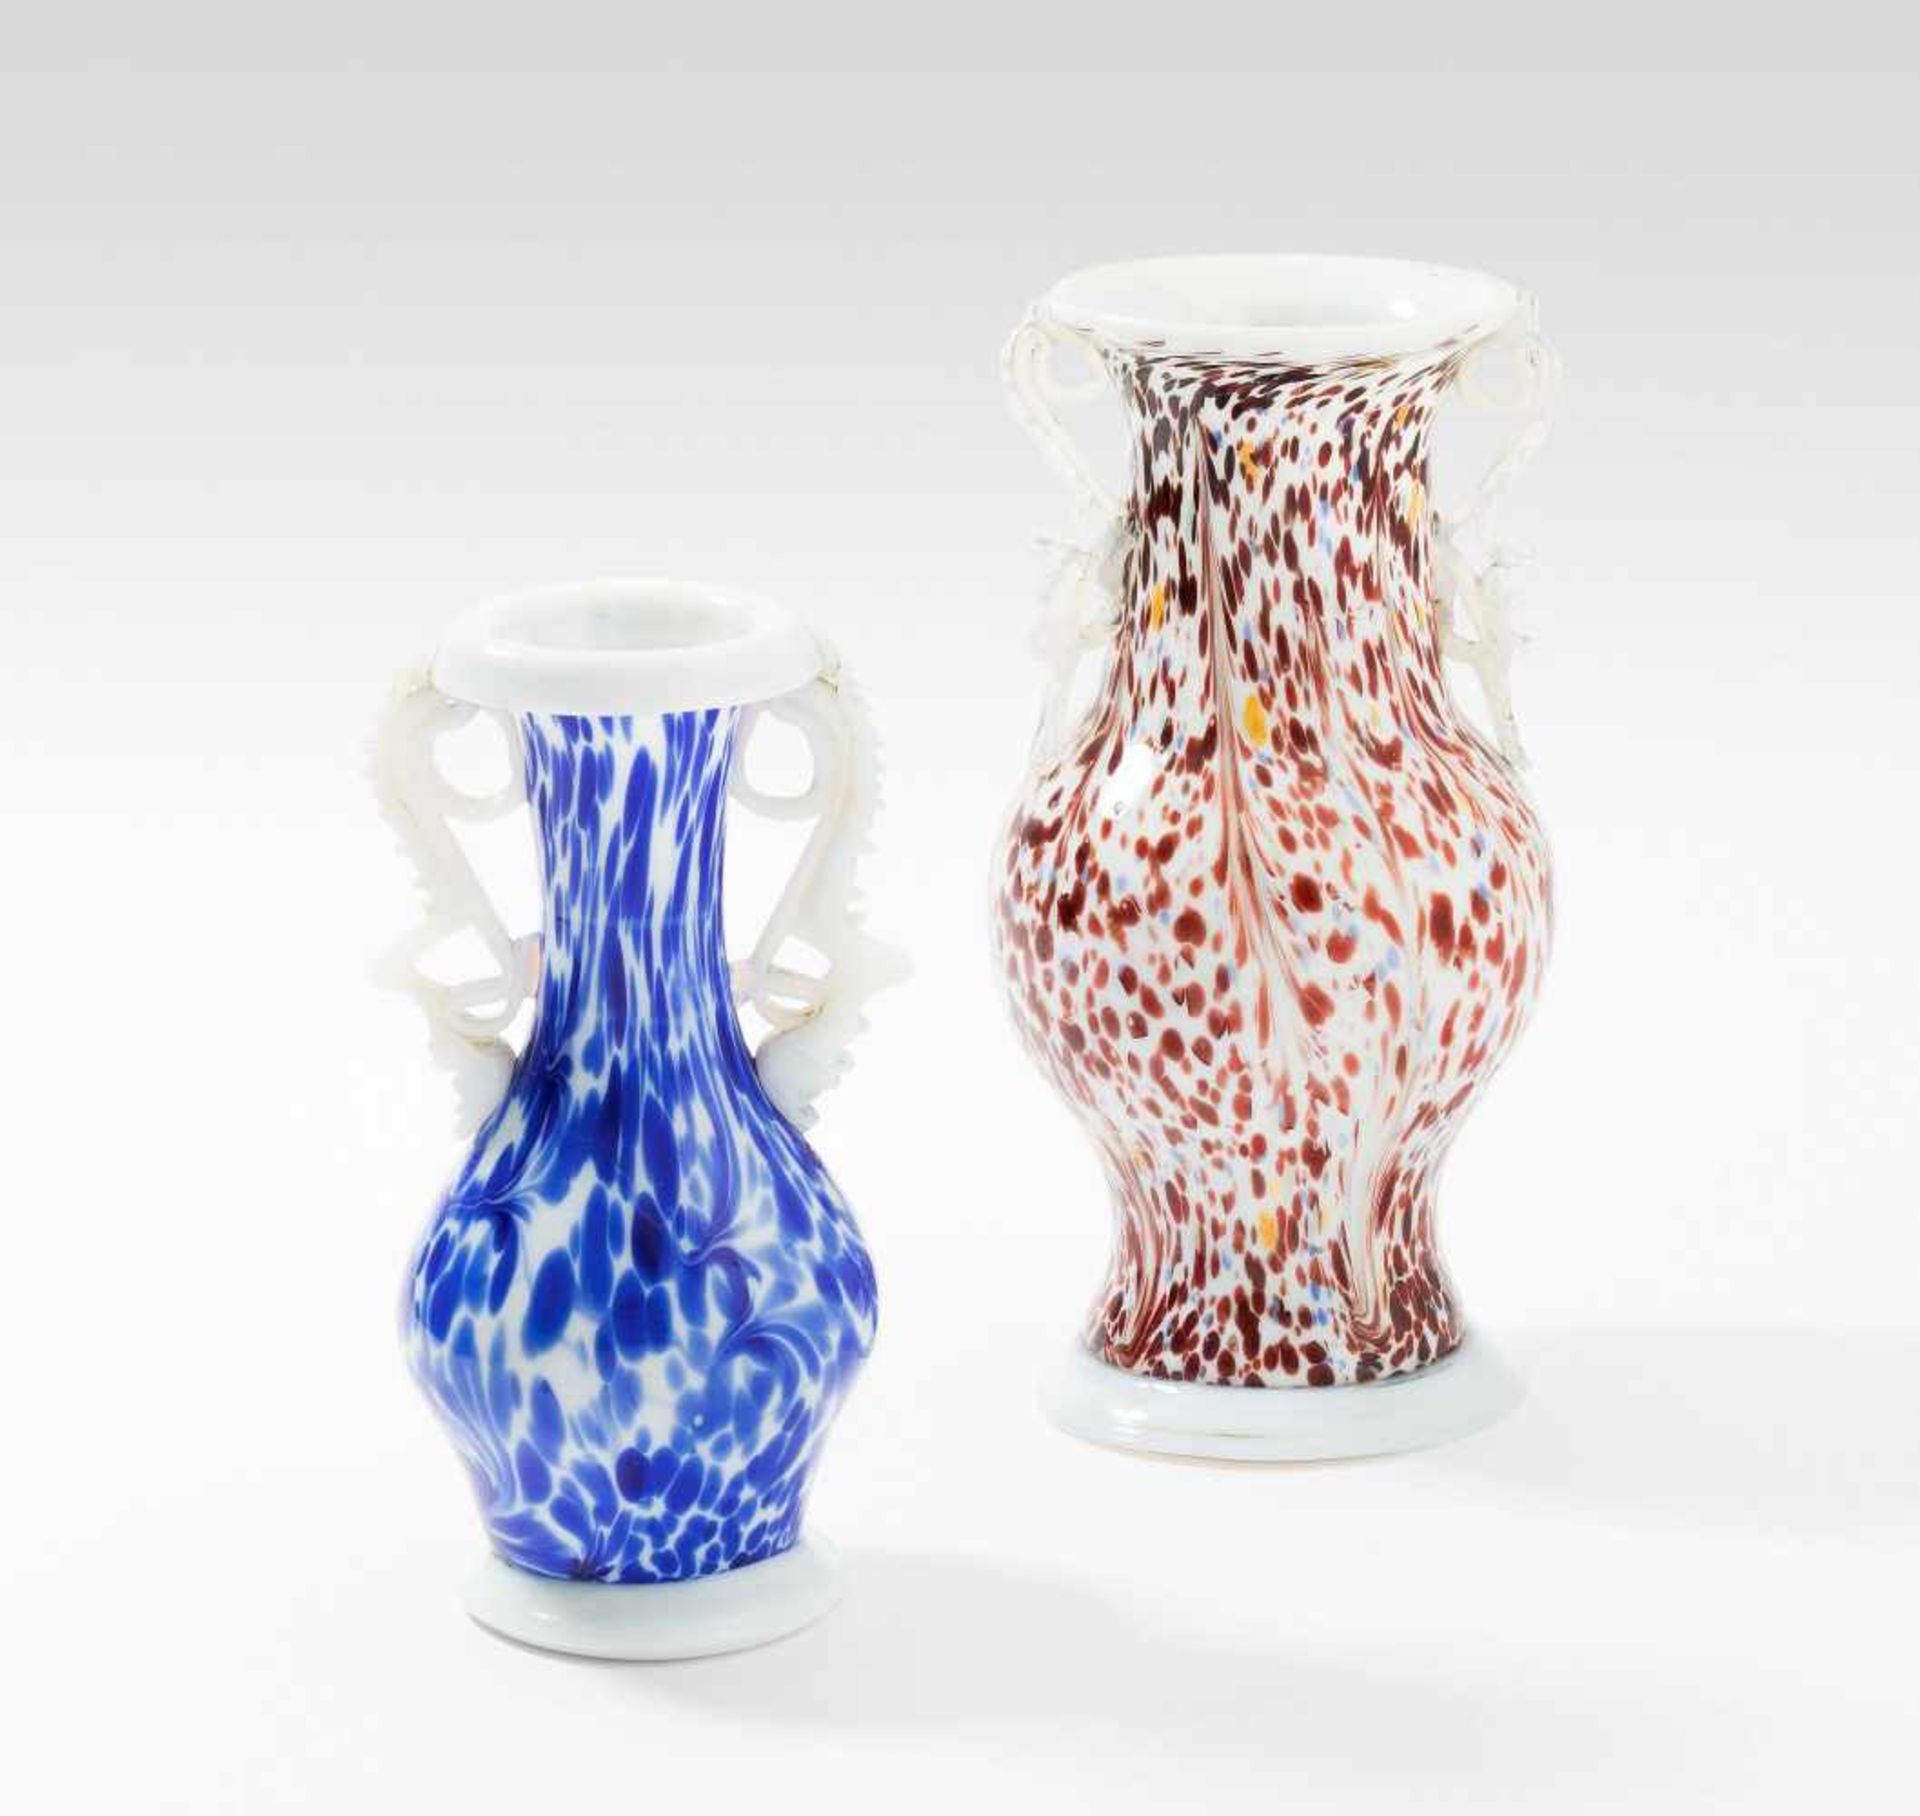 Alpenländisch2 kleine Vasen. 19.Jh. Wohl Flühli. Weisses Opalglas mit braun-hellblau-gelben bzw.